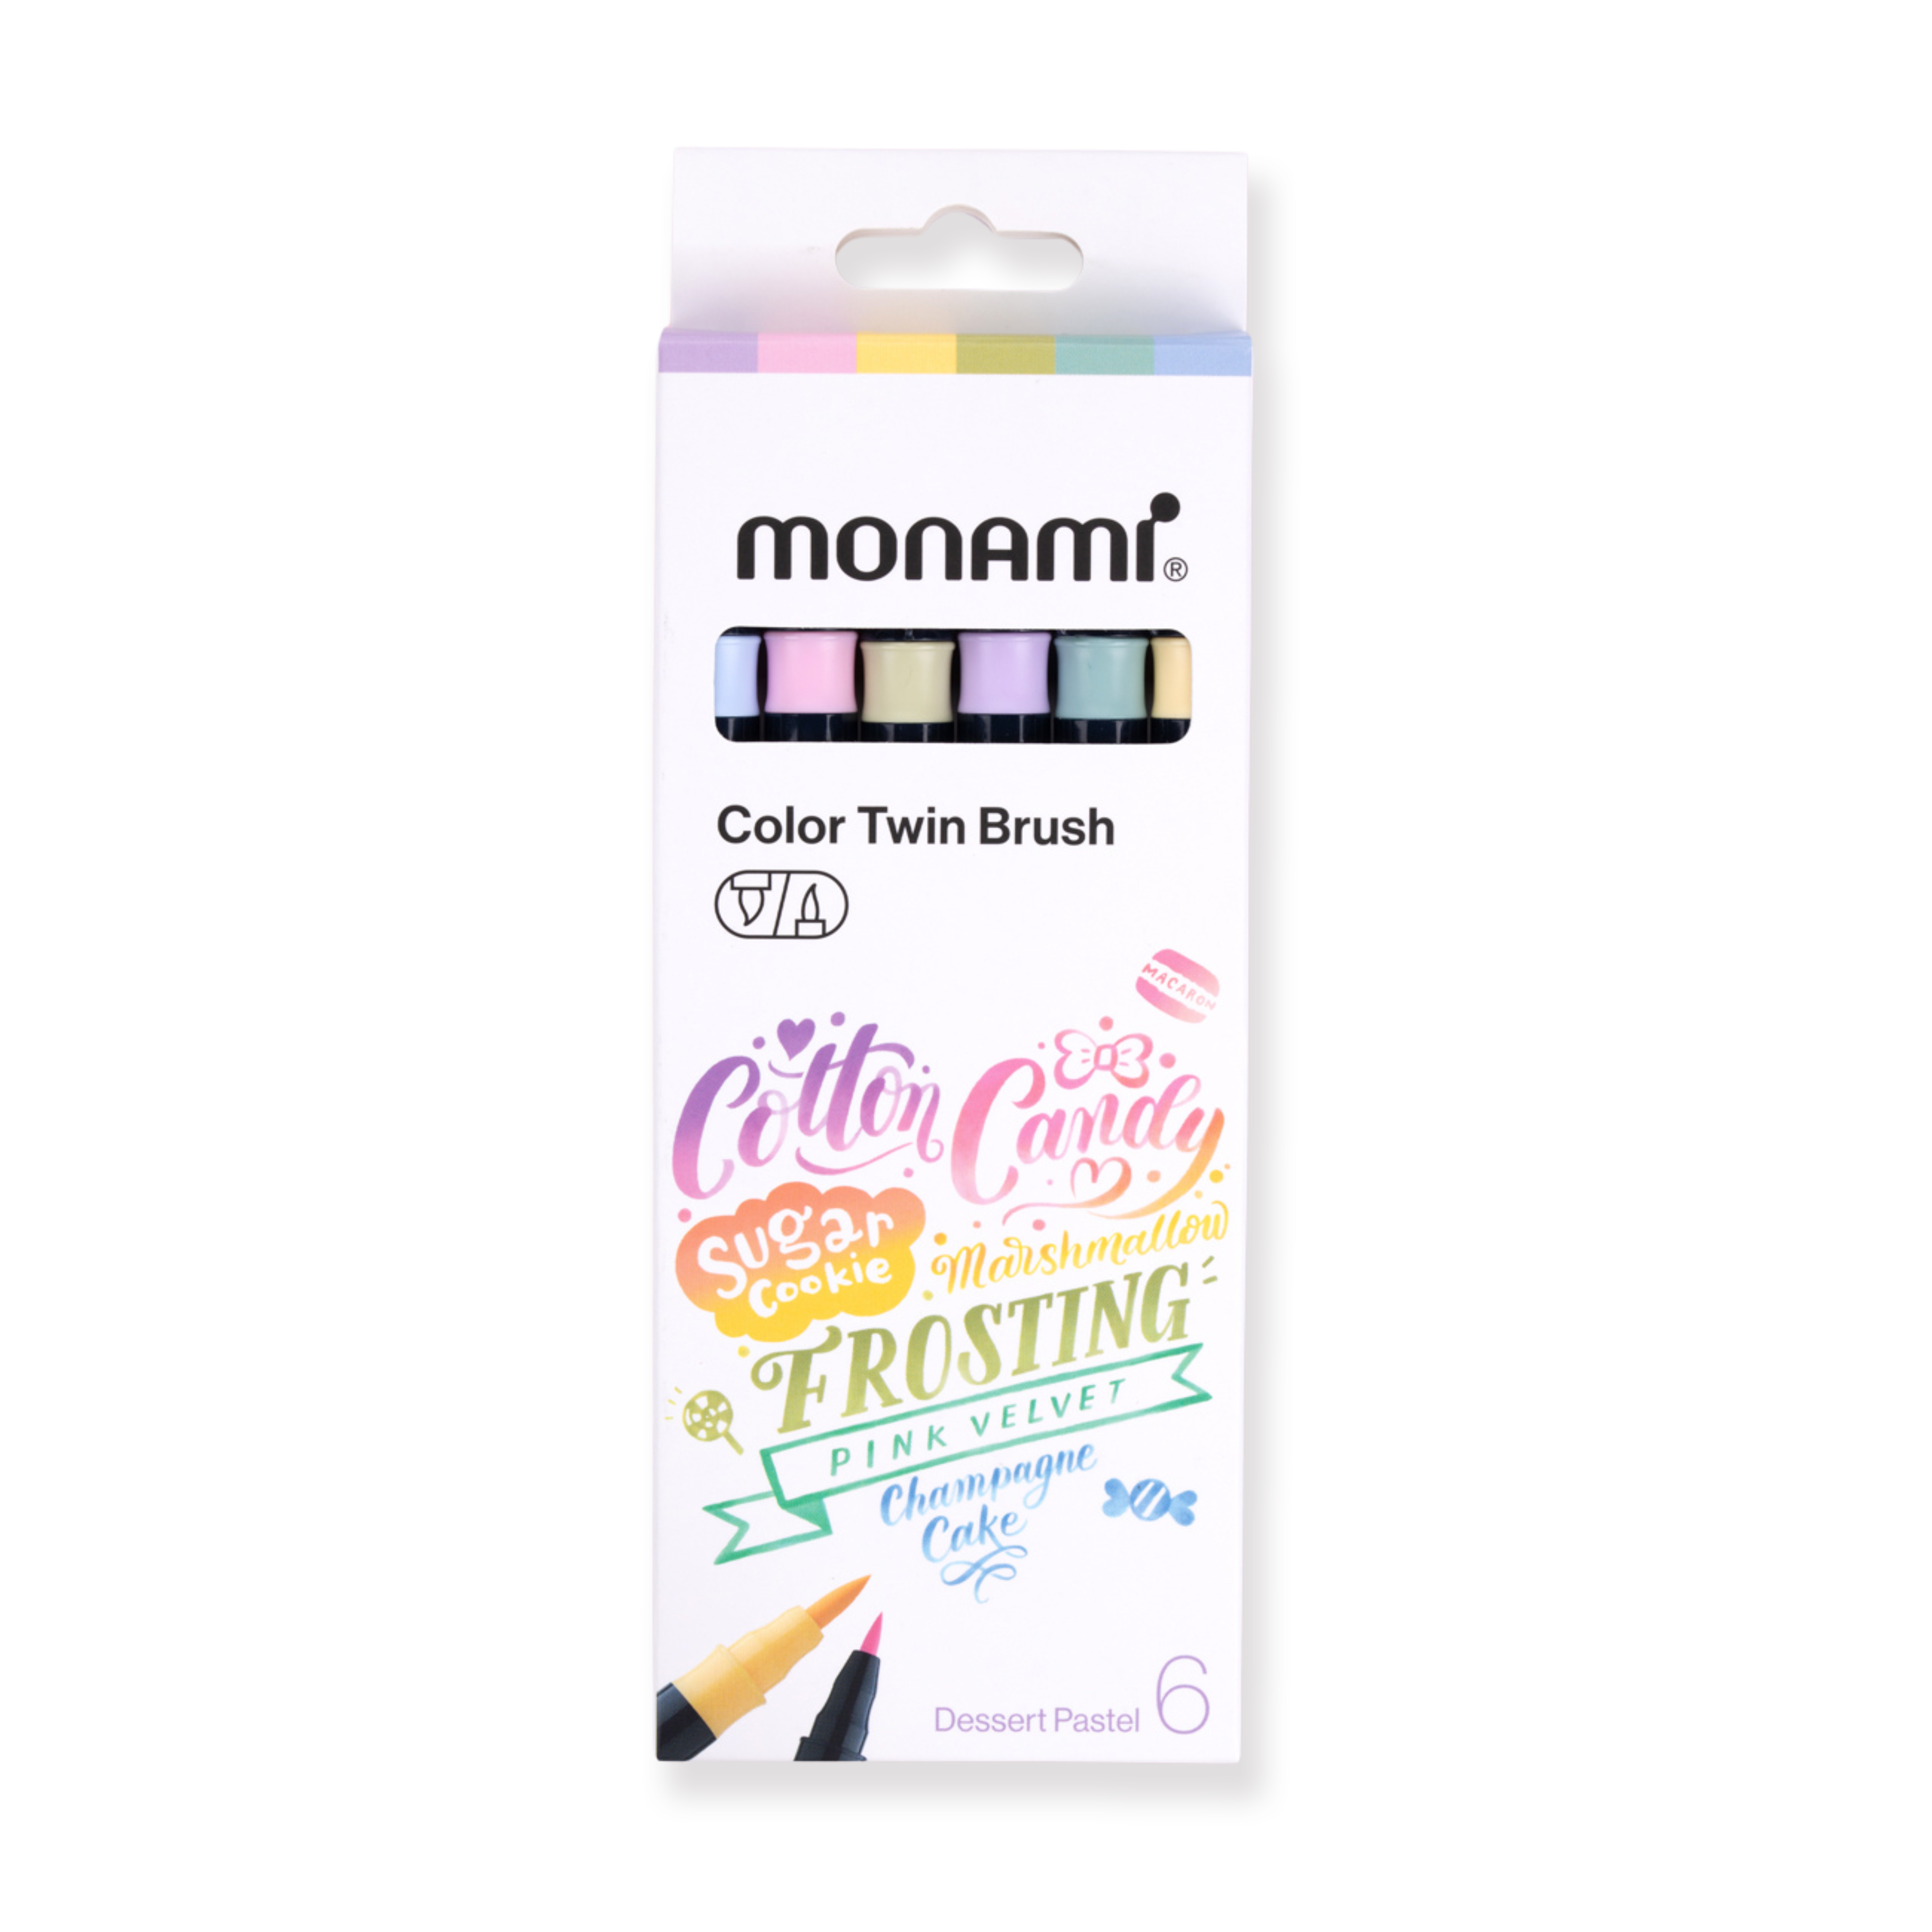 Monami Color Twin Brush - Juego de pasteles de postre